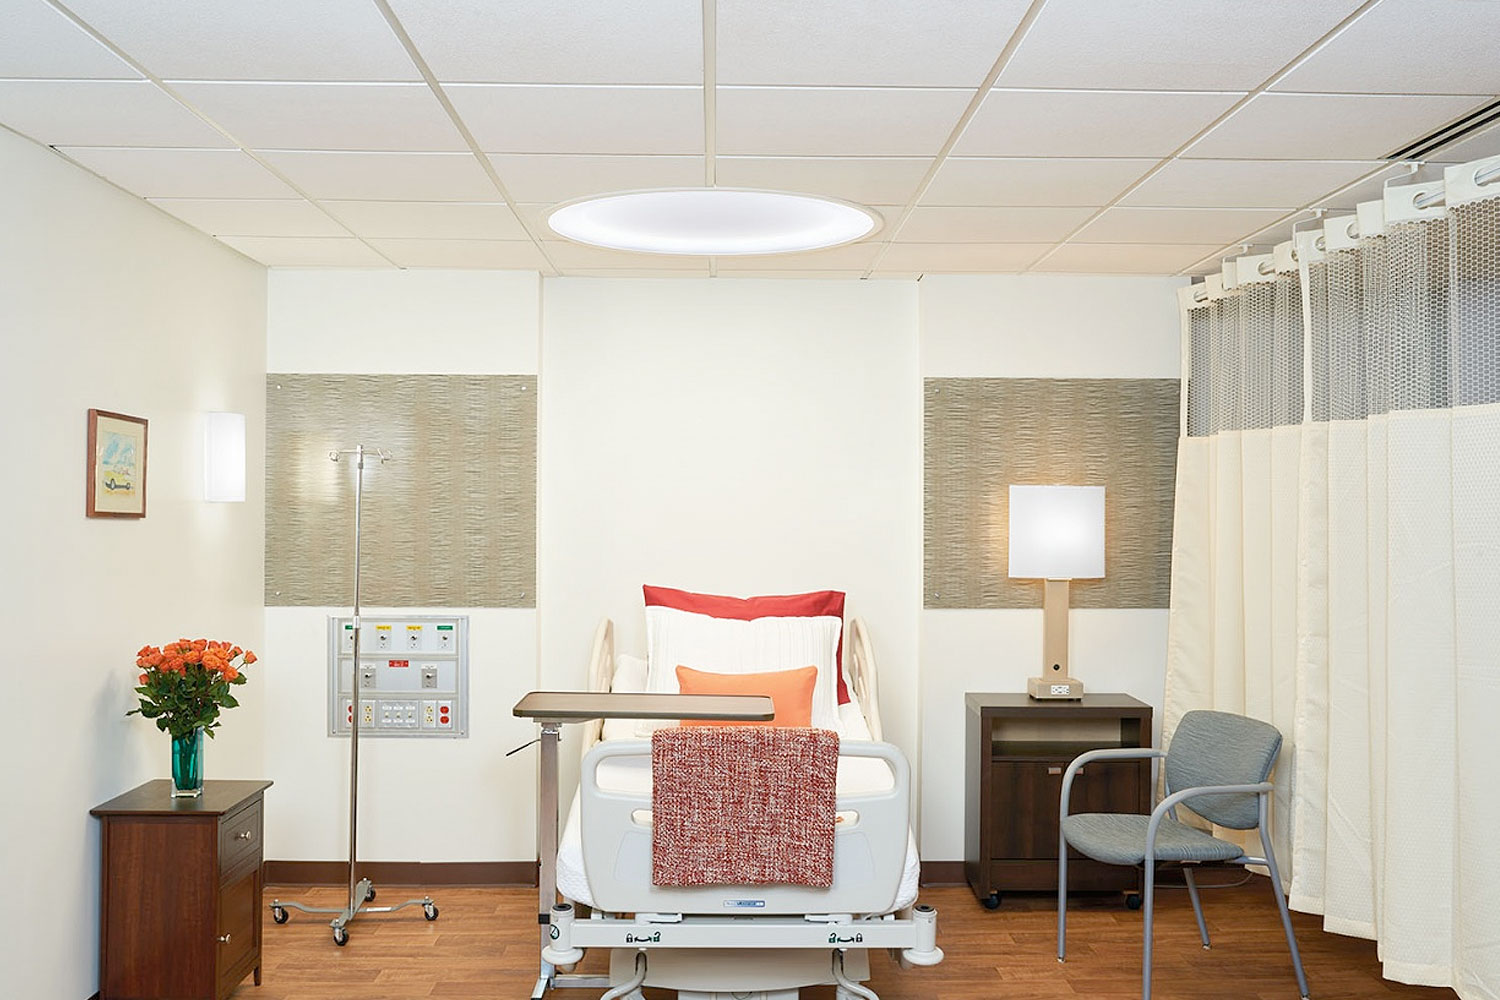 symmetry over hospital bed lighting full room